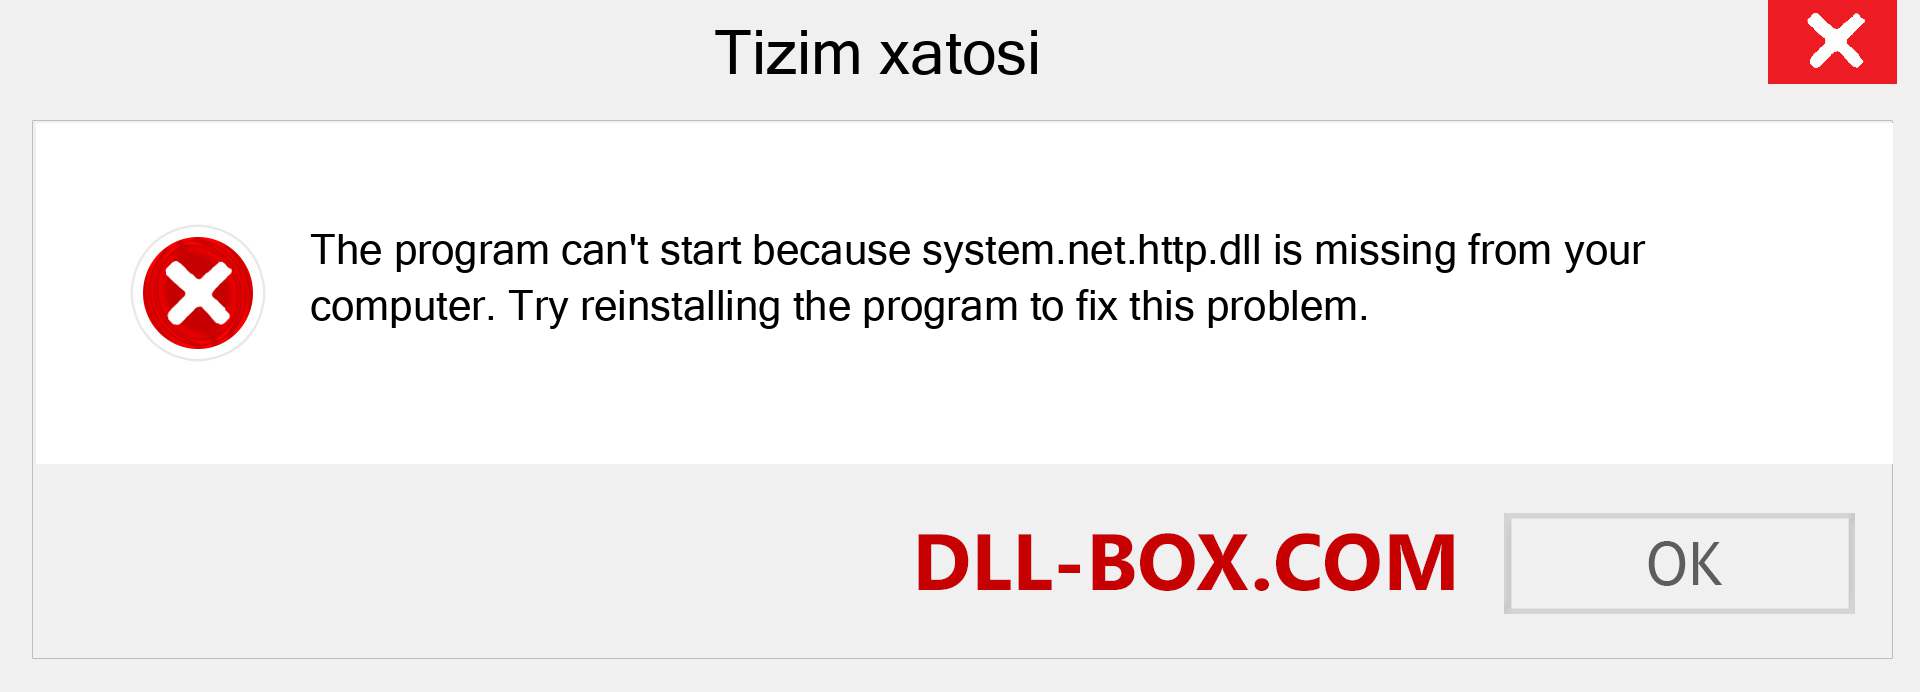 system.net.http.dll fayli yo'qolganmi?. Windows 7, 8, 10 uchun yuklab olish - Windowsda system.net.http dll etishmayotgan xatoni tuzating, rasmlar, rasmlar